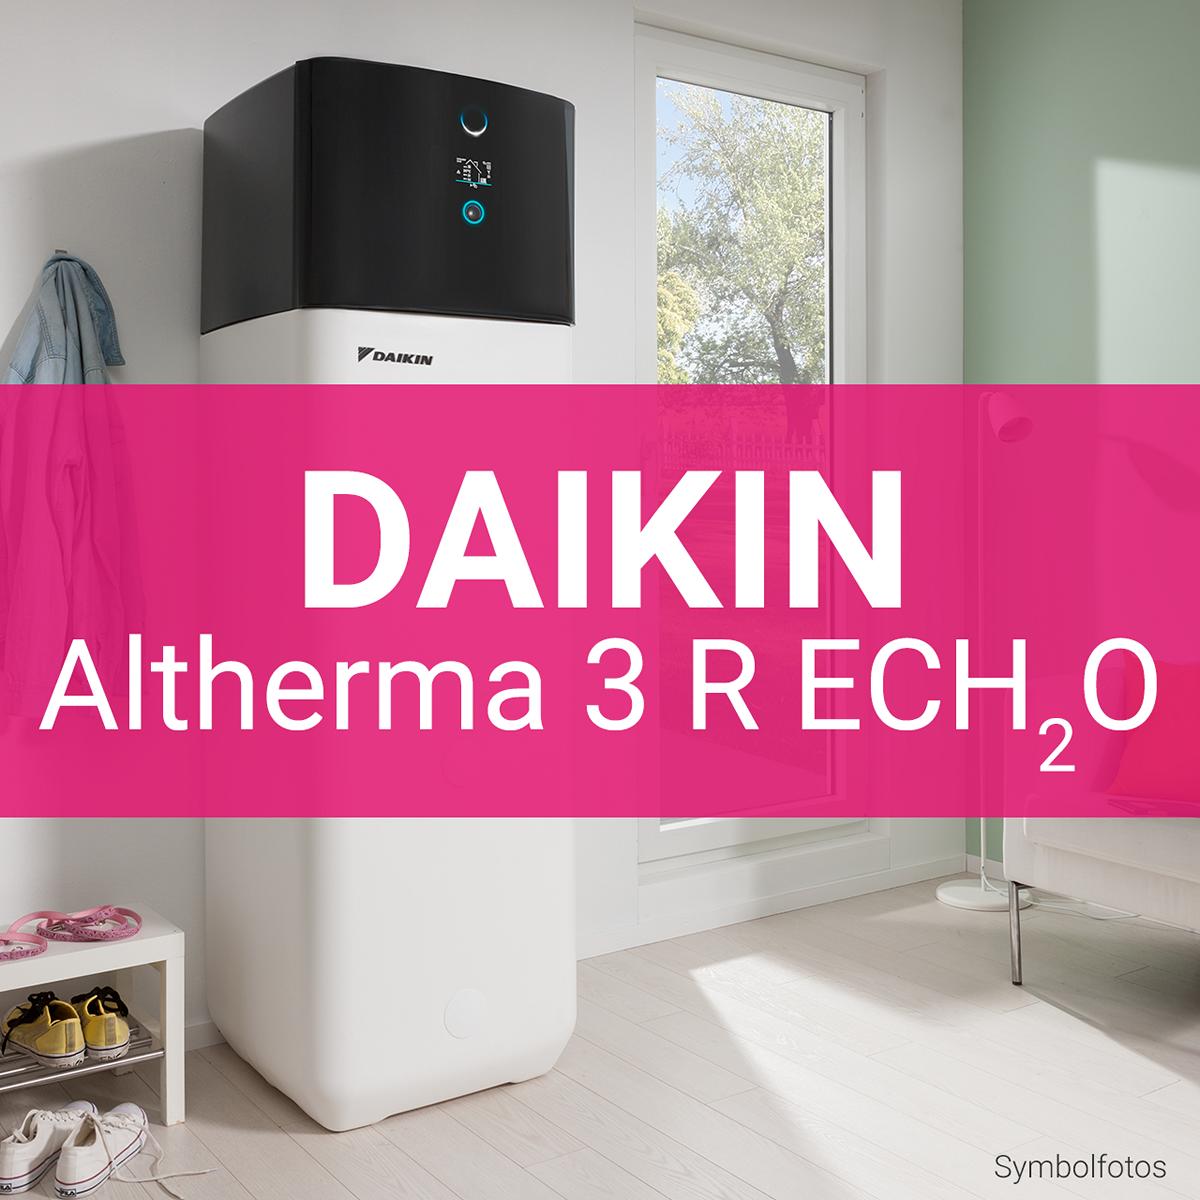 Daikin Altherma 3 R ECH2O